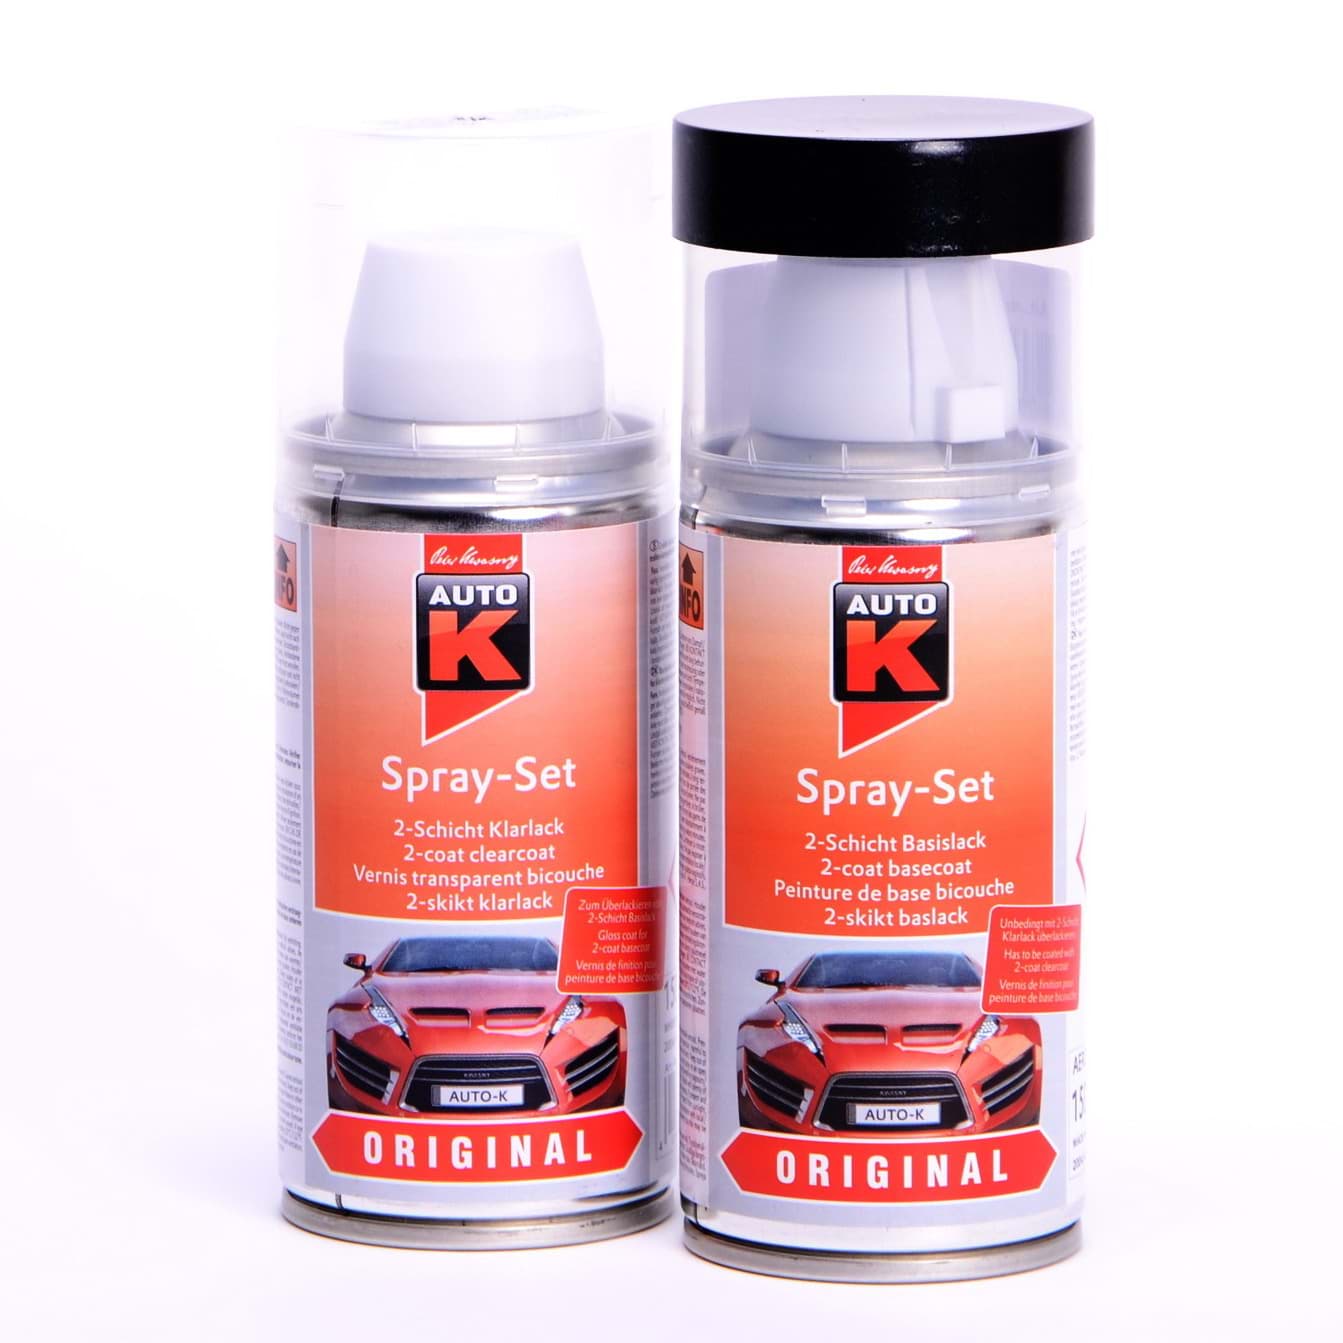 Auto-K Spray-Set Autolack für Renault 632 Gris Boreal met 43439 resmi